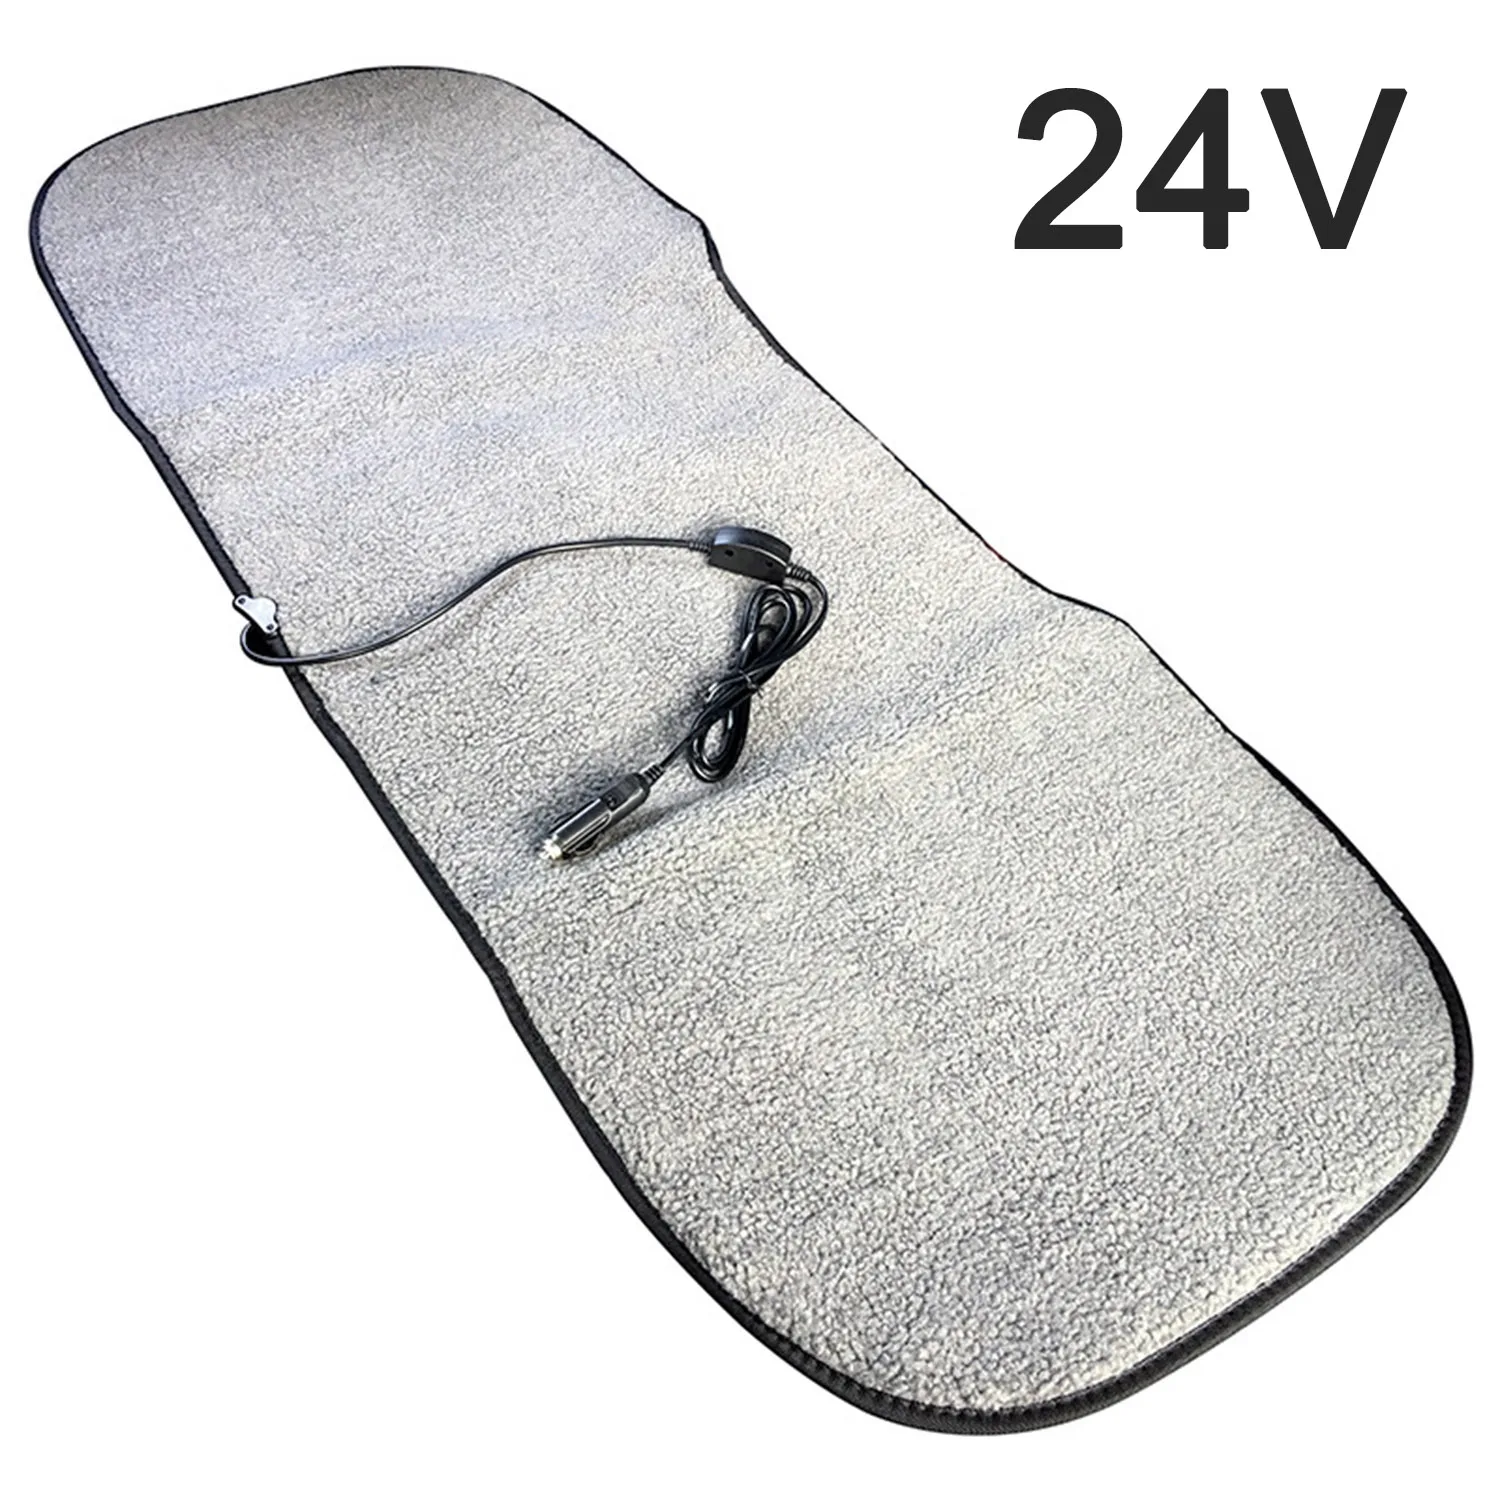 Автомобильная подушка сиденья с подогревом 24V заднего сиденья зимняя теплая накидка на кресло нагревательный коврик - Название цвета: Grey  24V